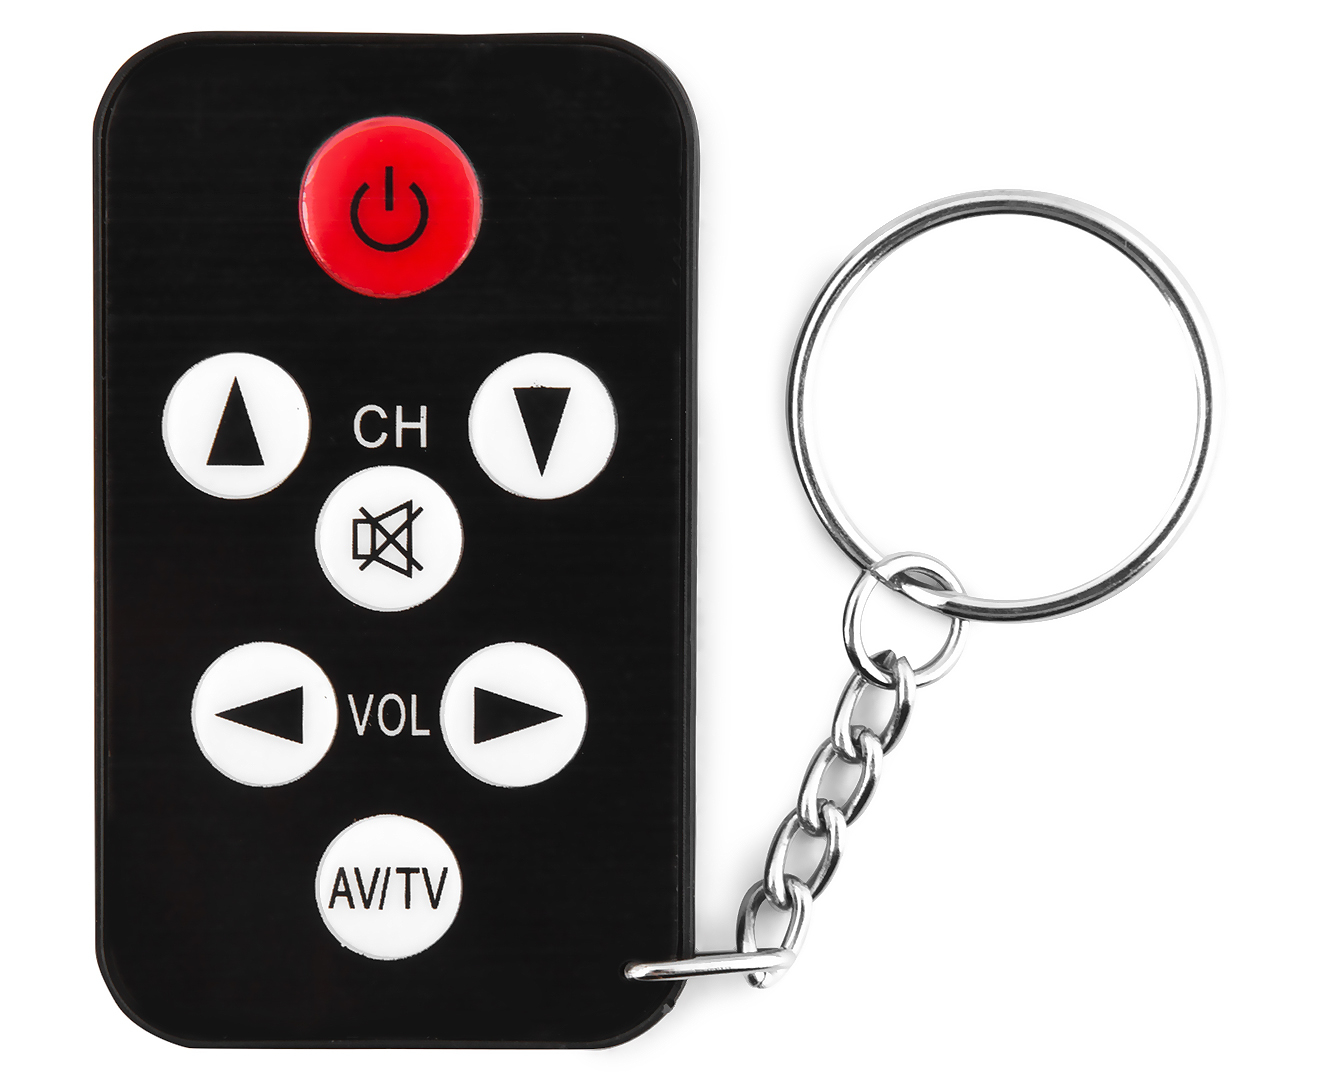 Universal Mini TV Remote Control - Black | Catch.com.au